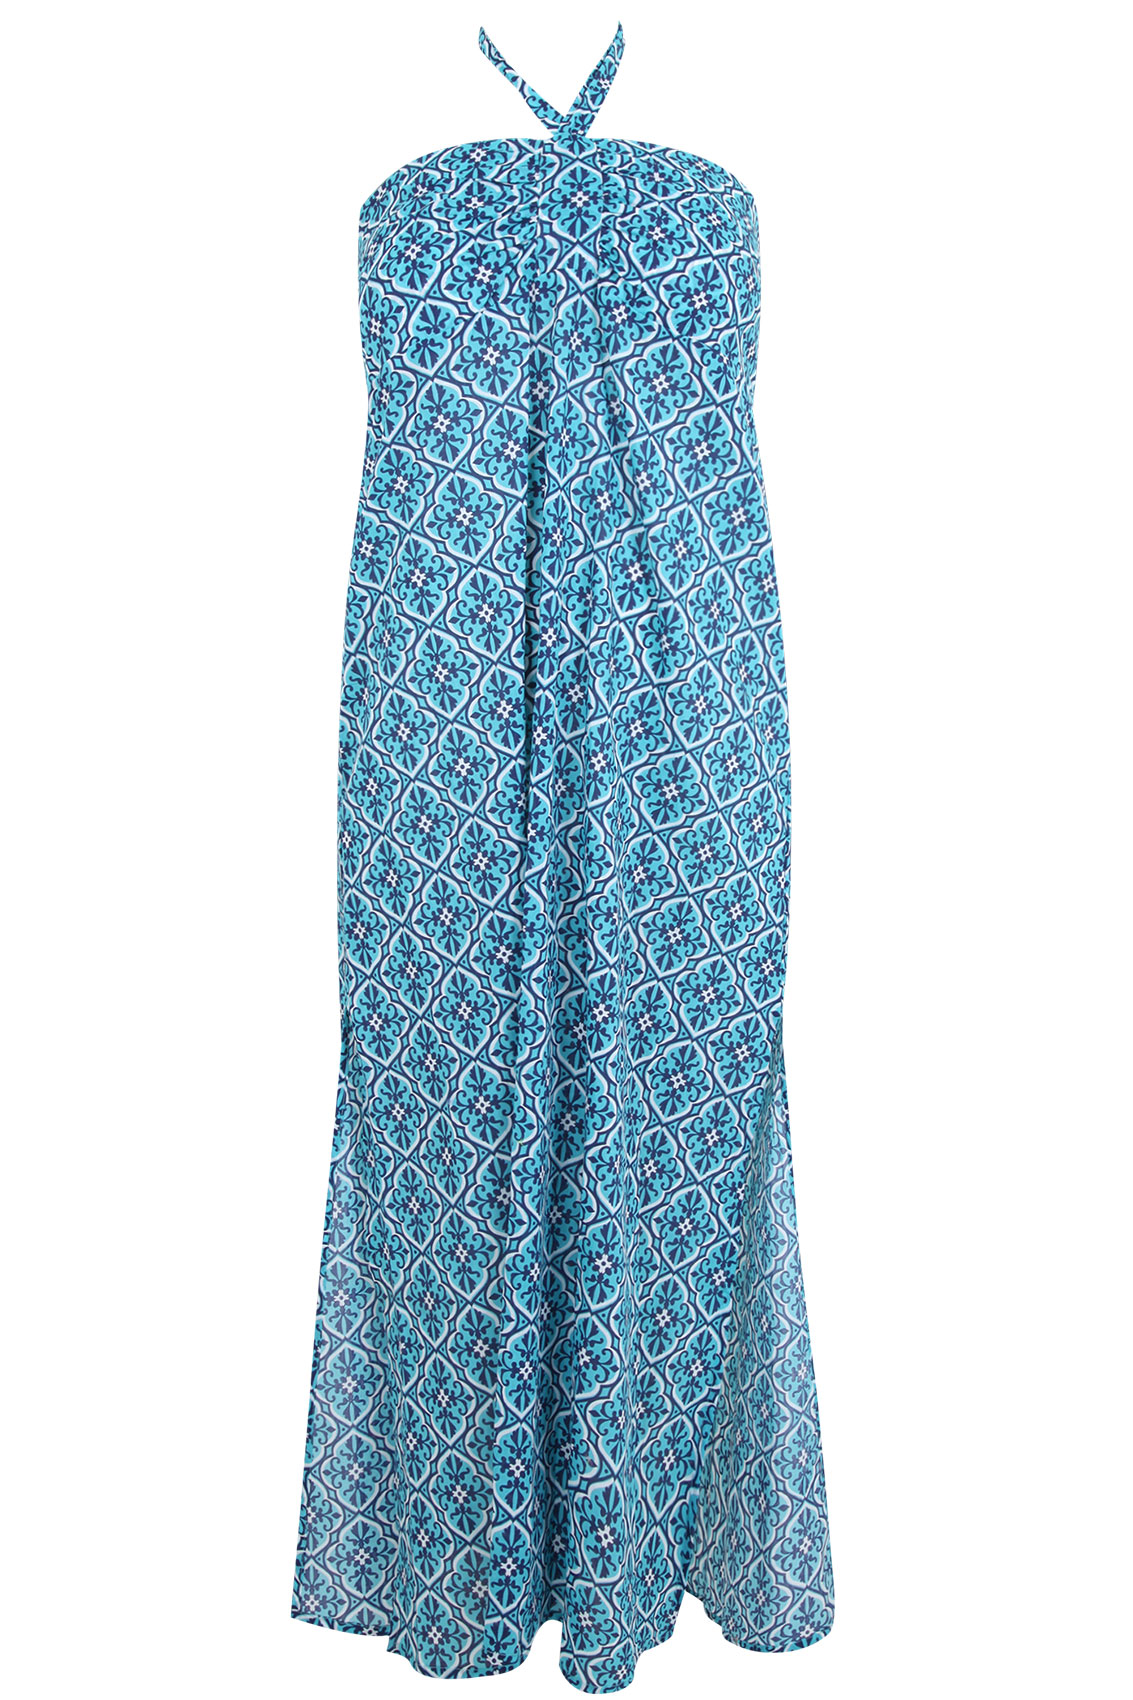 Turquoise Halter Neck Tile Print Maxi Dress plus Size 16 to 32